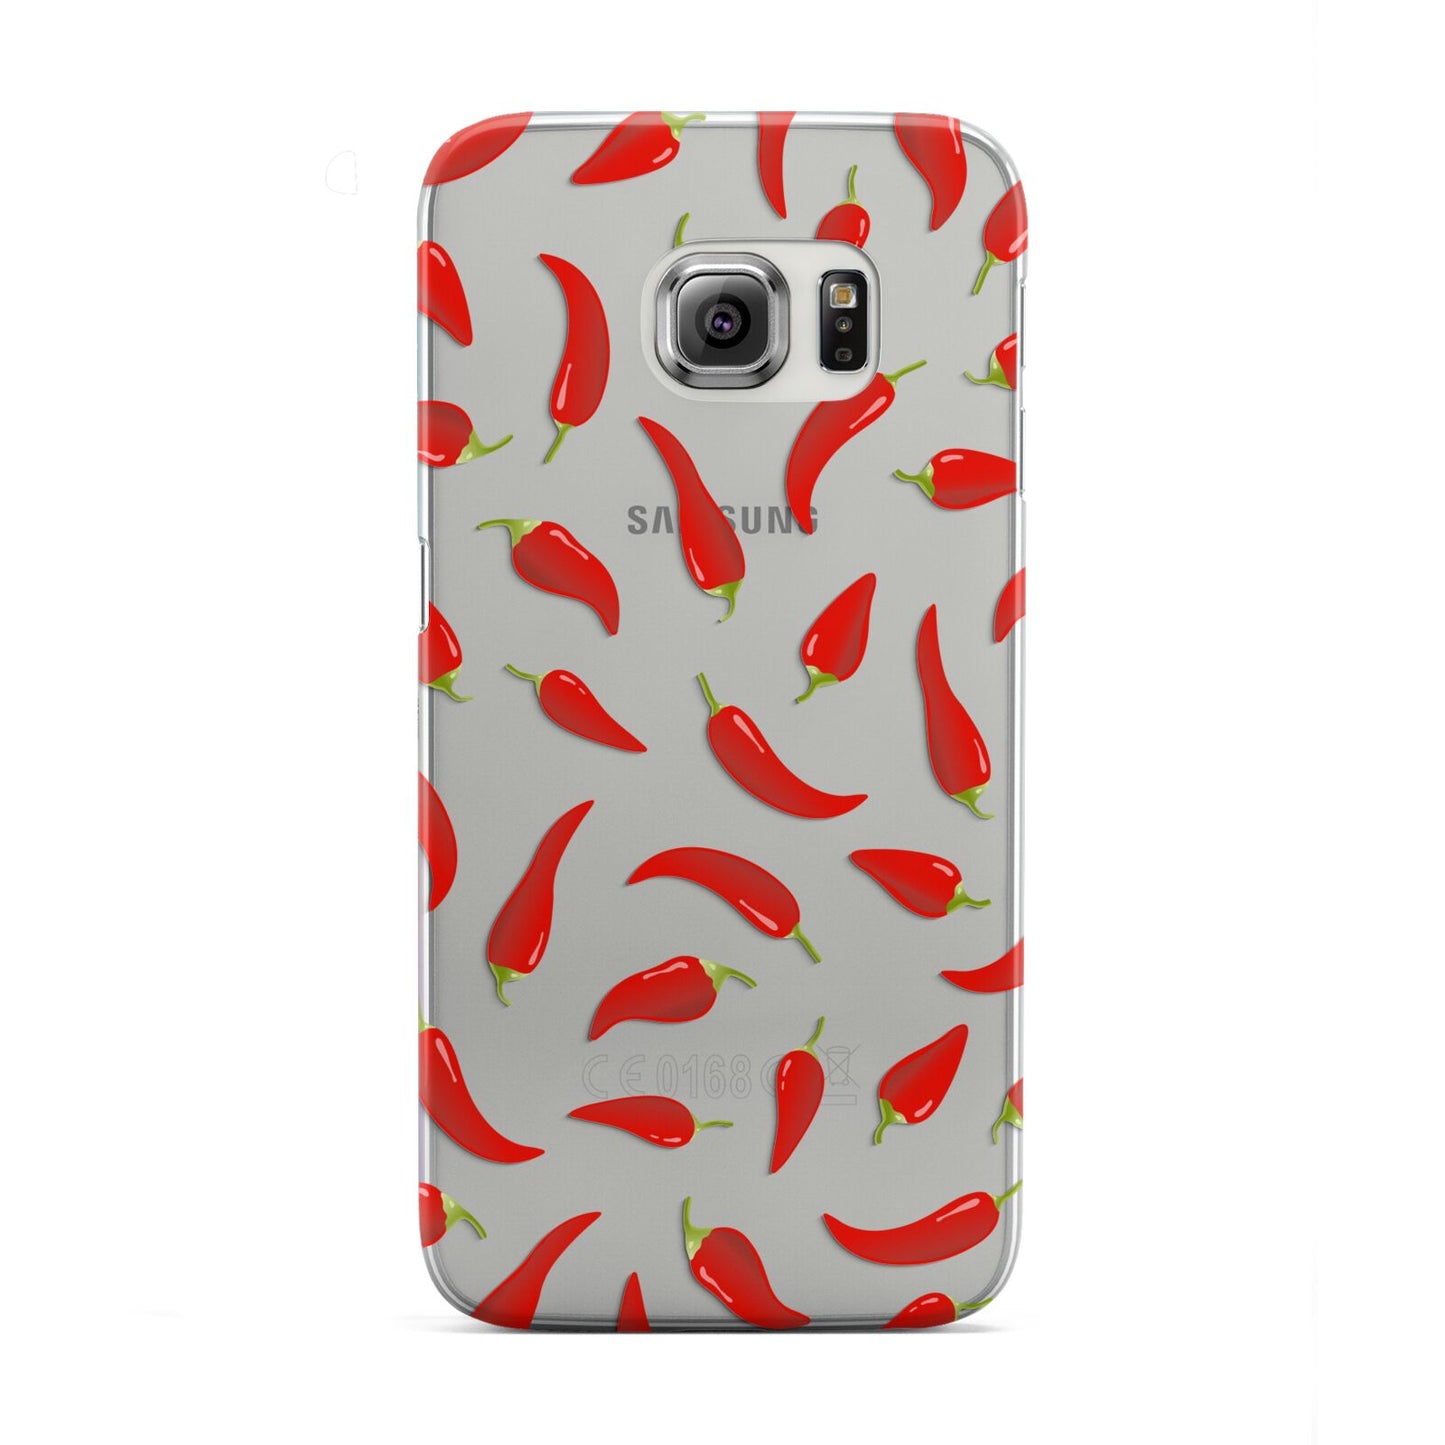 Chilli Pepper Samsung Galaxy S6 Edge Case